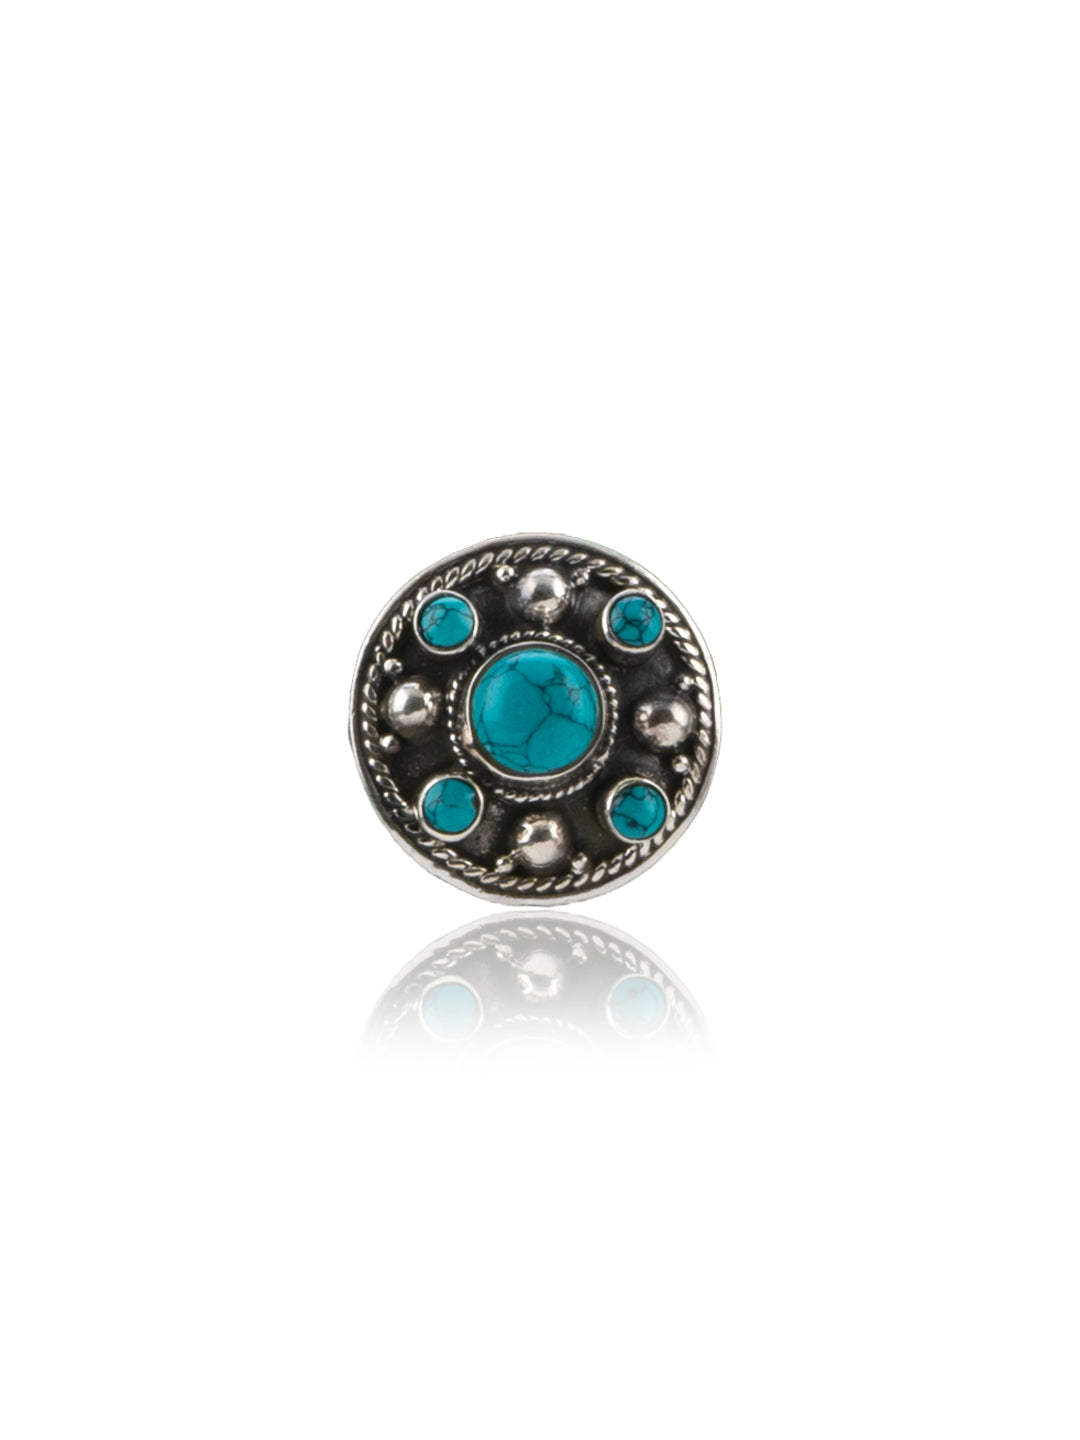 Turquoise Rawa work Adjustable Ring